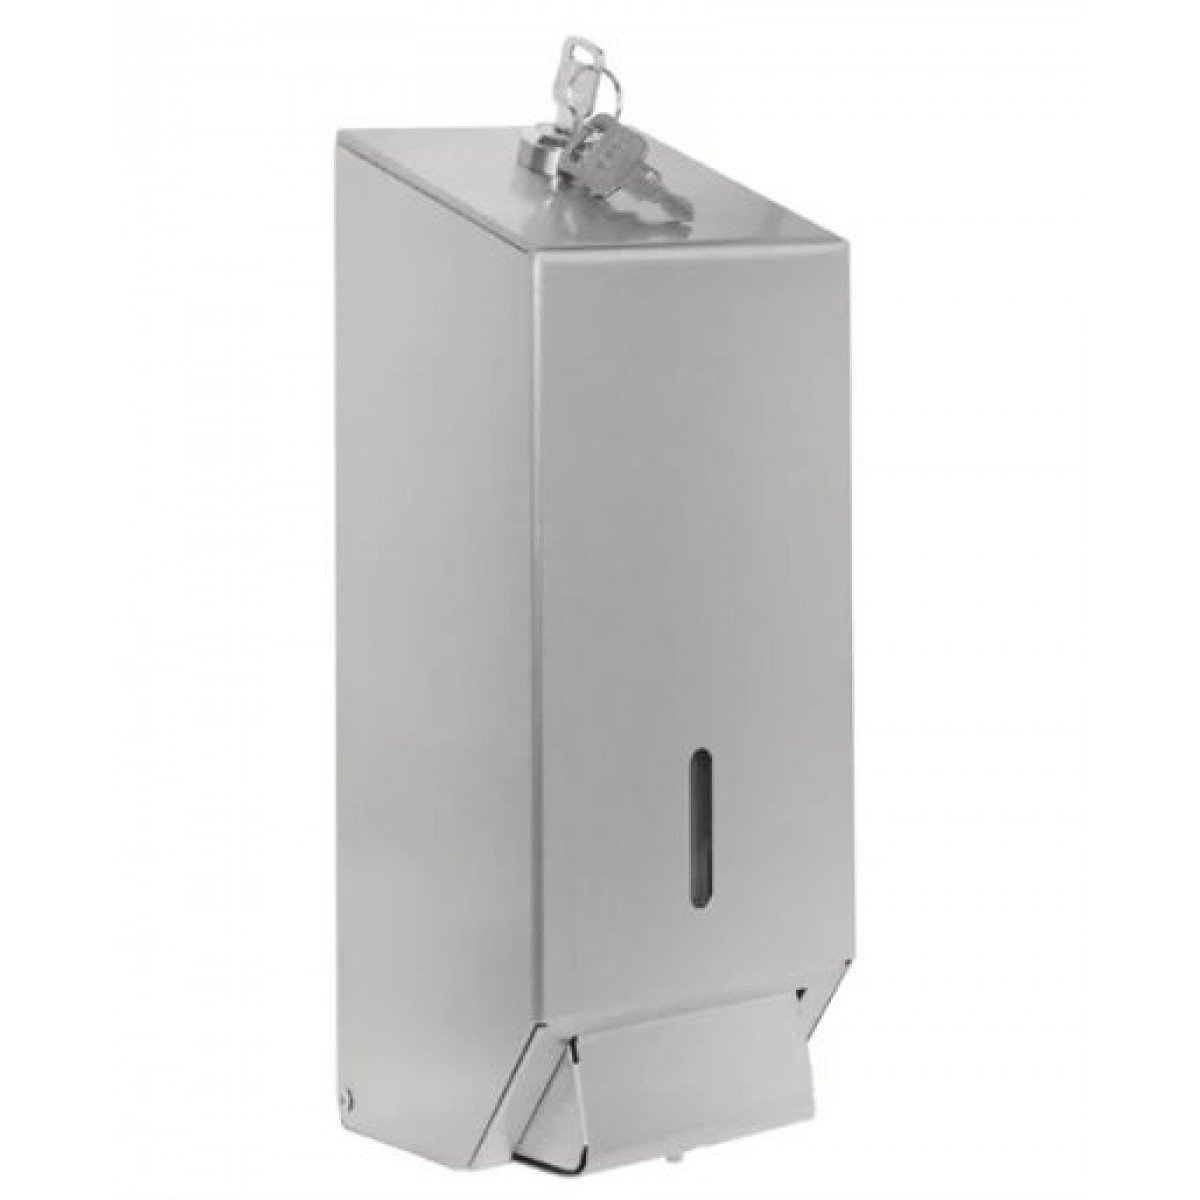 Steel Soap and Hand Sanitiser Gel Dispenser